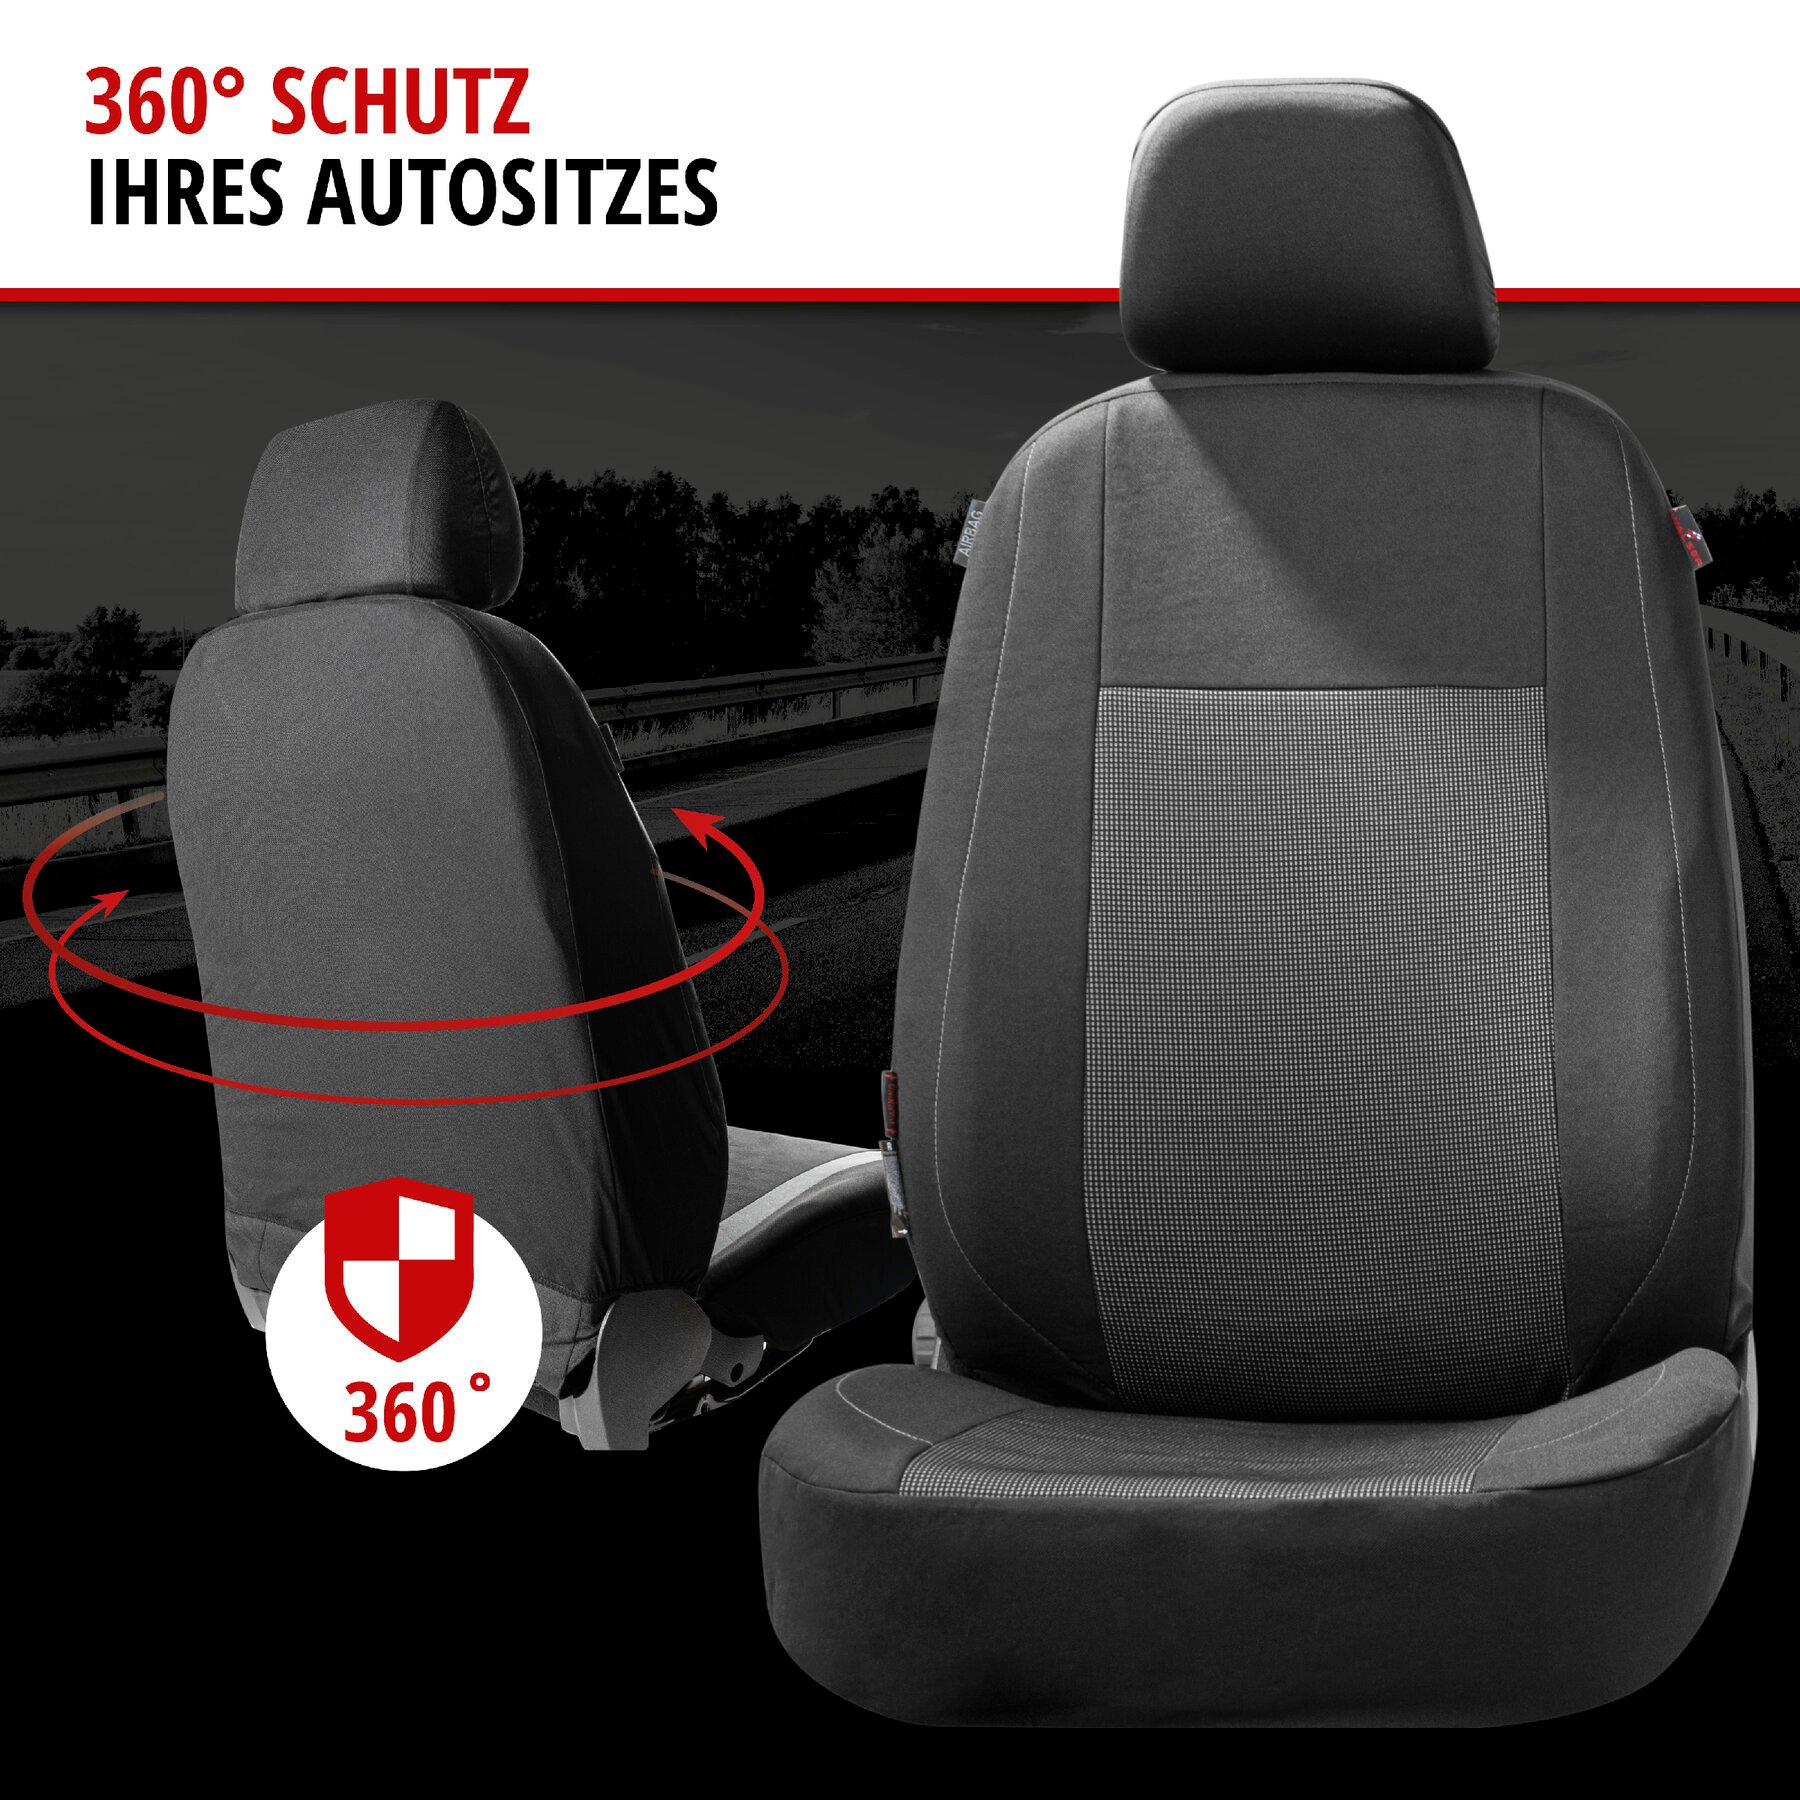 Autositzbezug ZIPP-IT Premium Ardwell, PKW-Schonbezüge für 2 Vordersitze mit Reißverschluss-System schwarz/grau